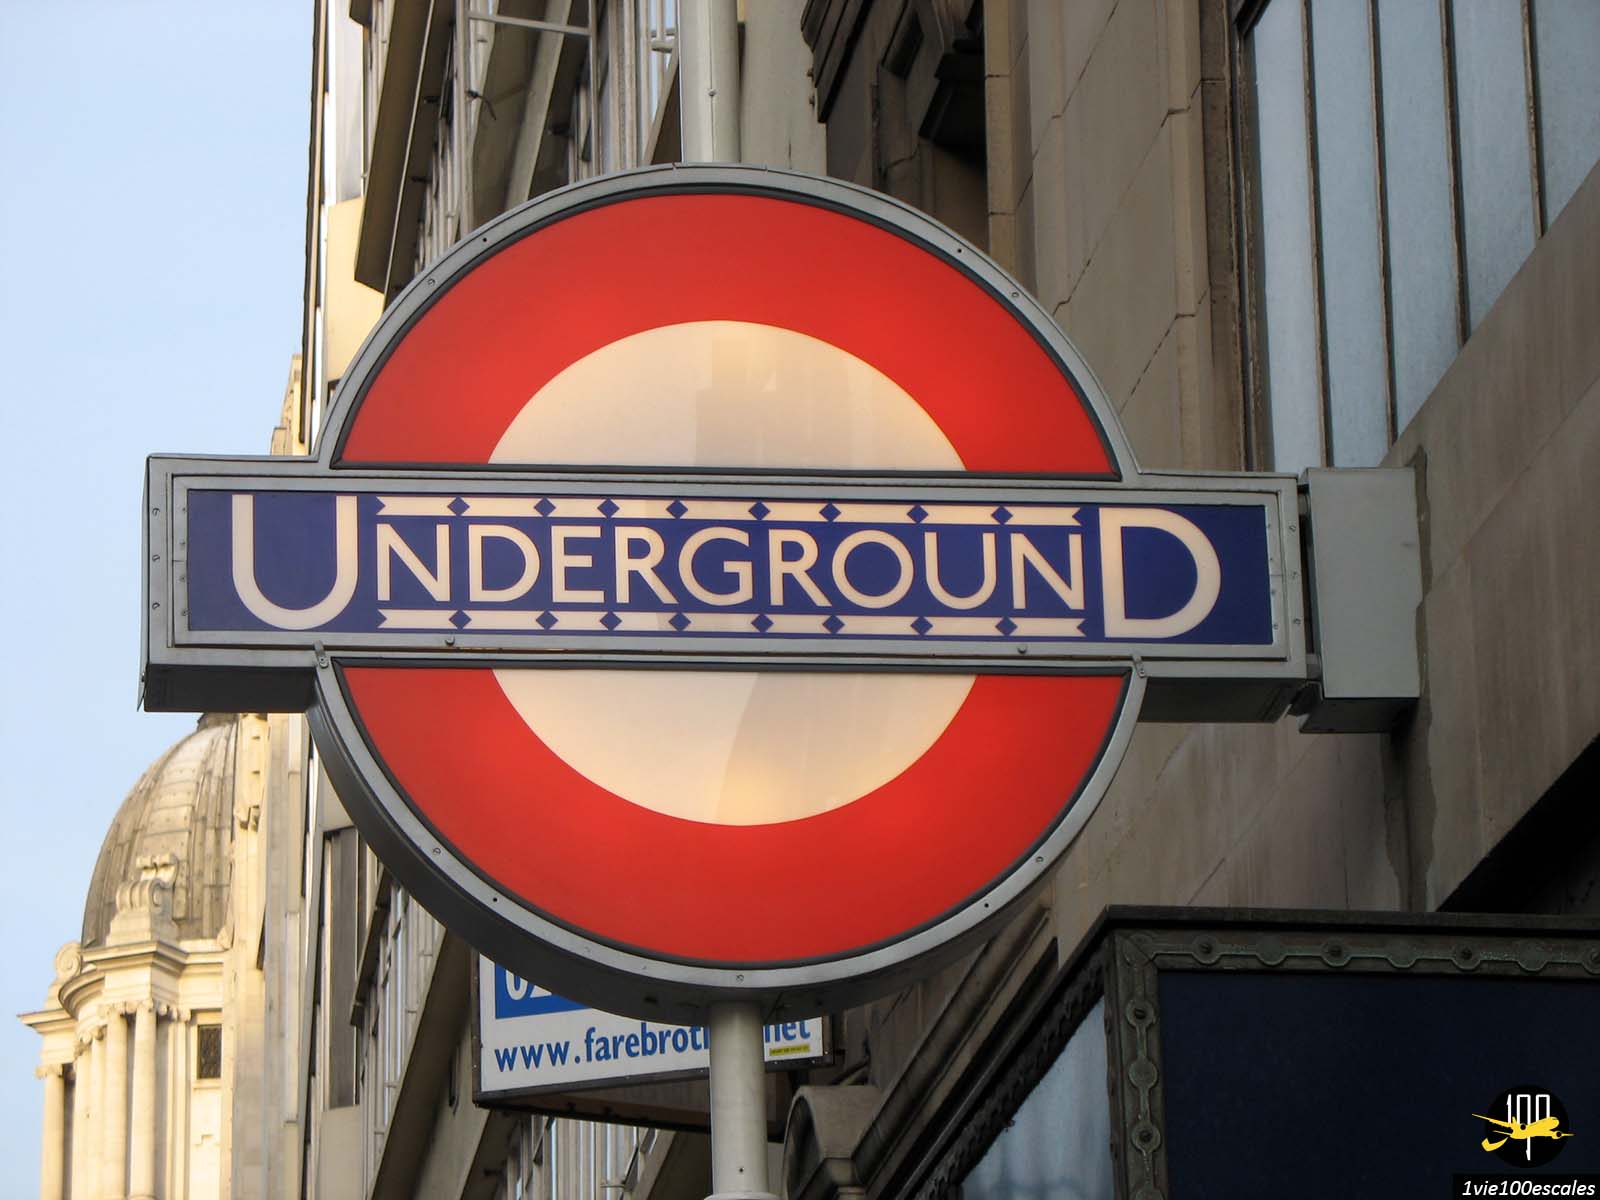 Panneau Underground de Londres indiquant l'entrée d'une station de métro